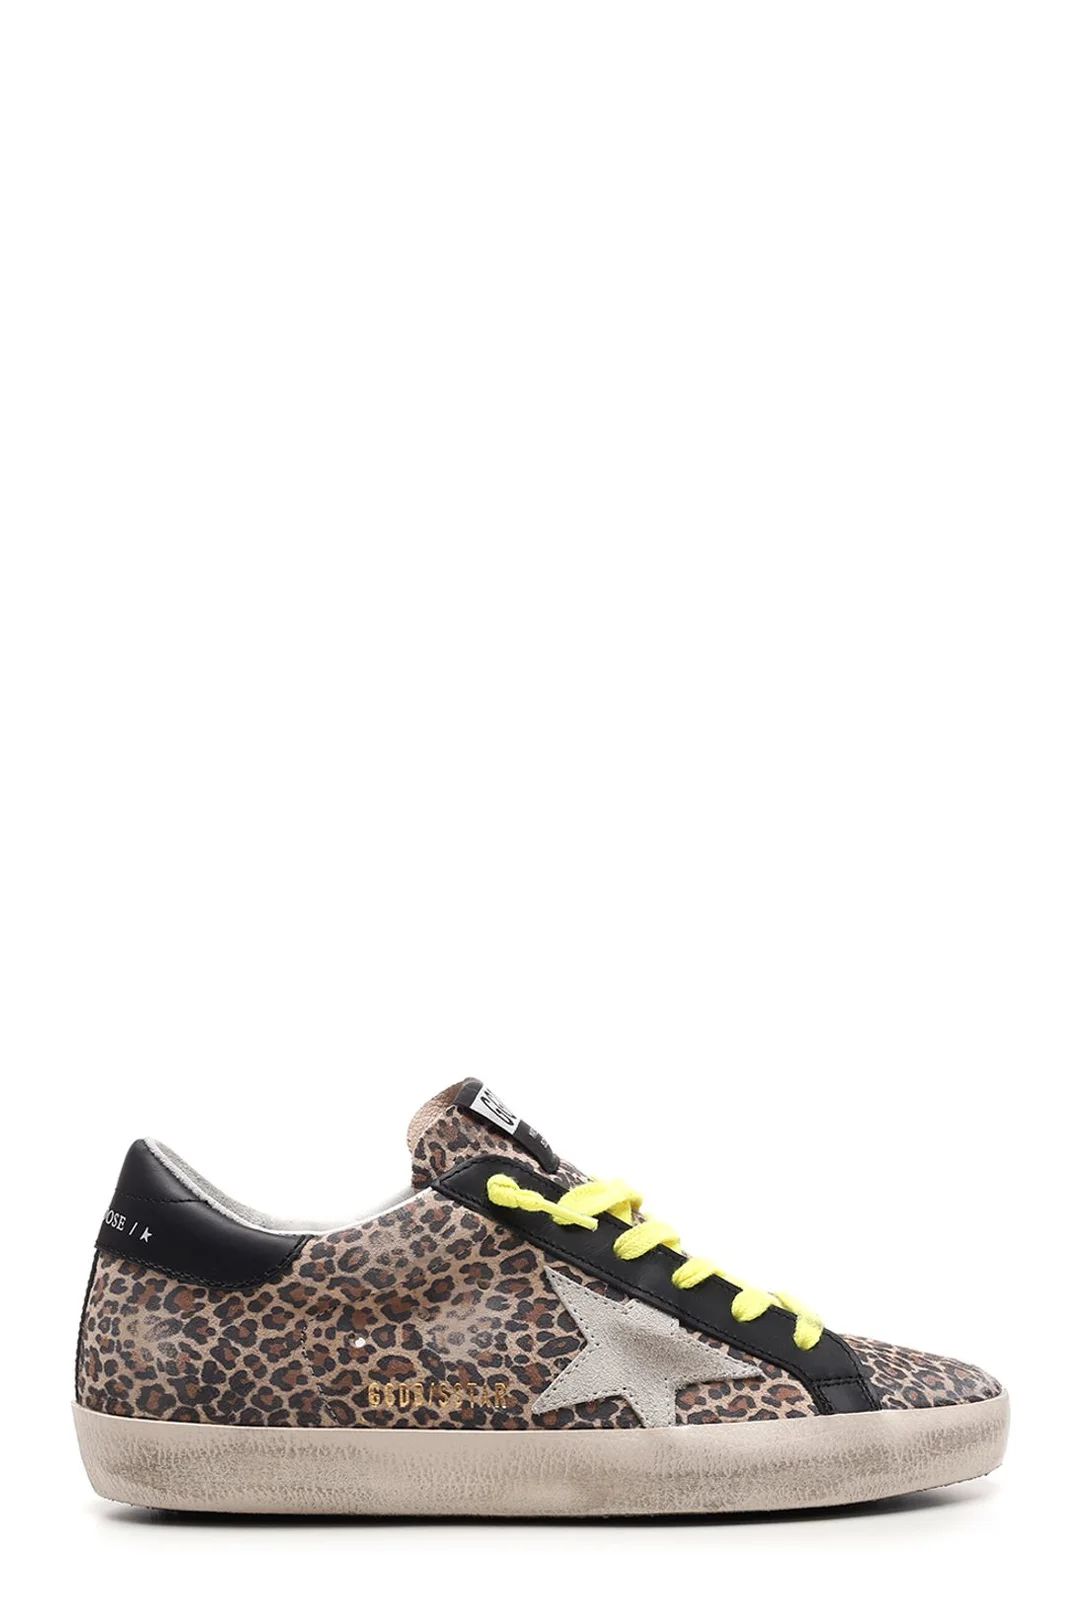 Golden Goose Deluxe Brand Leopard Print Superstar Sneakers | Cettire Global